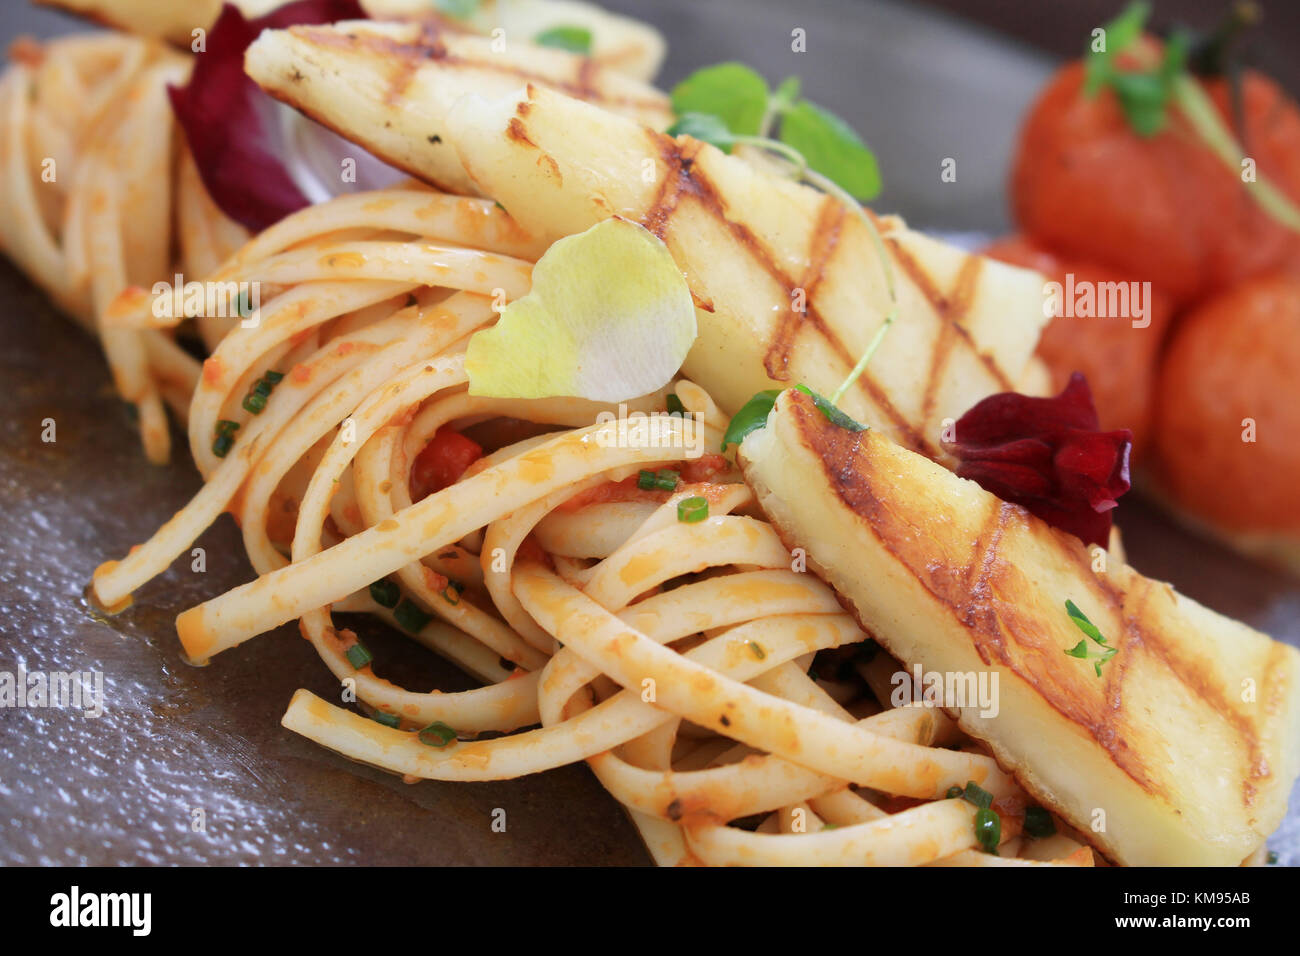 Houlumi grigliate con spaghetti pasto placcato Foto Stock